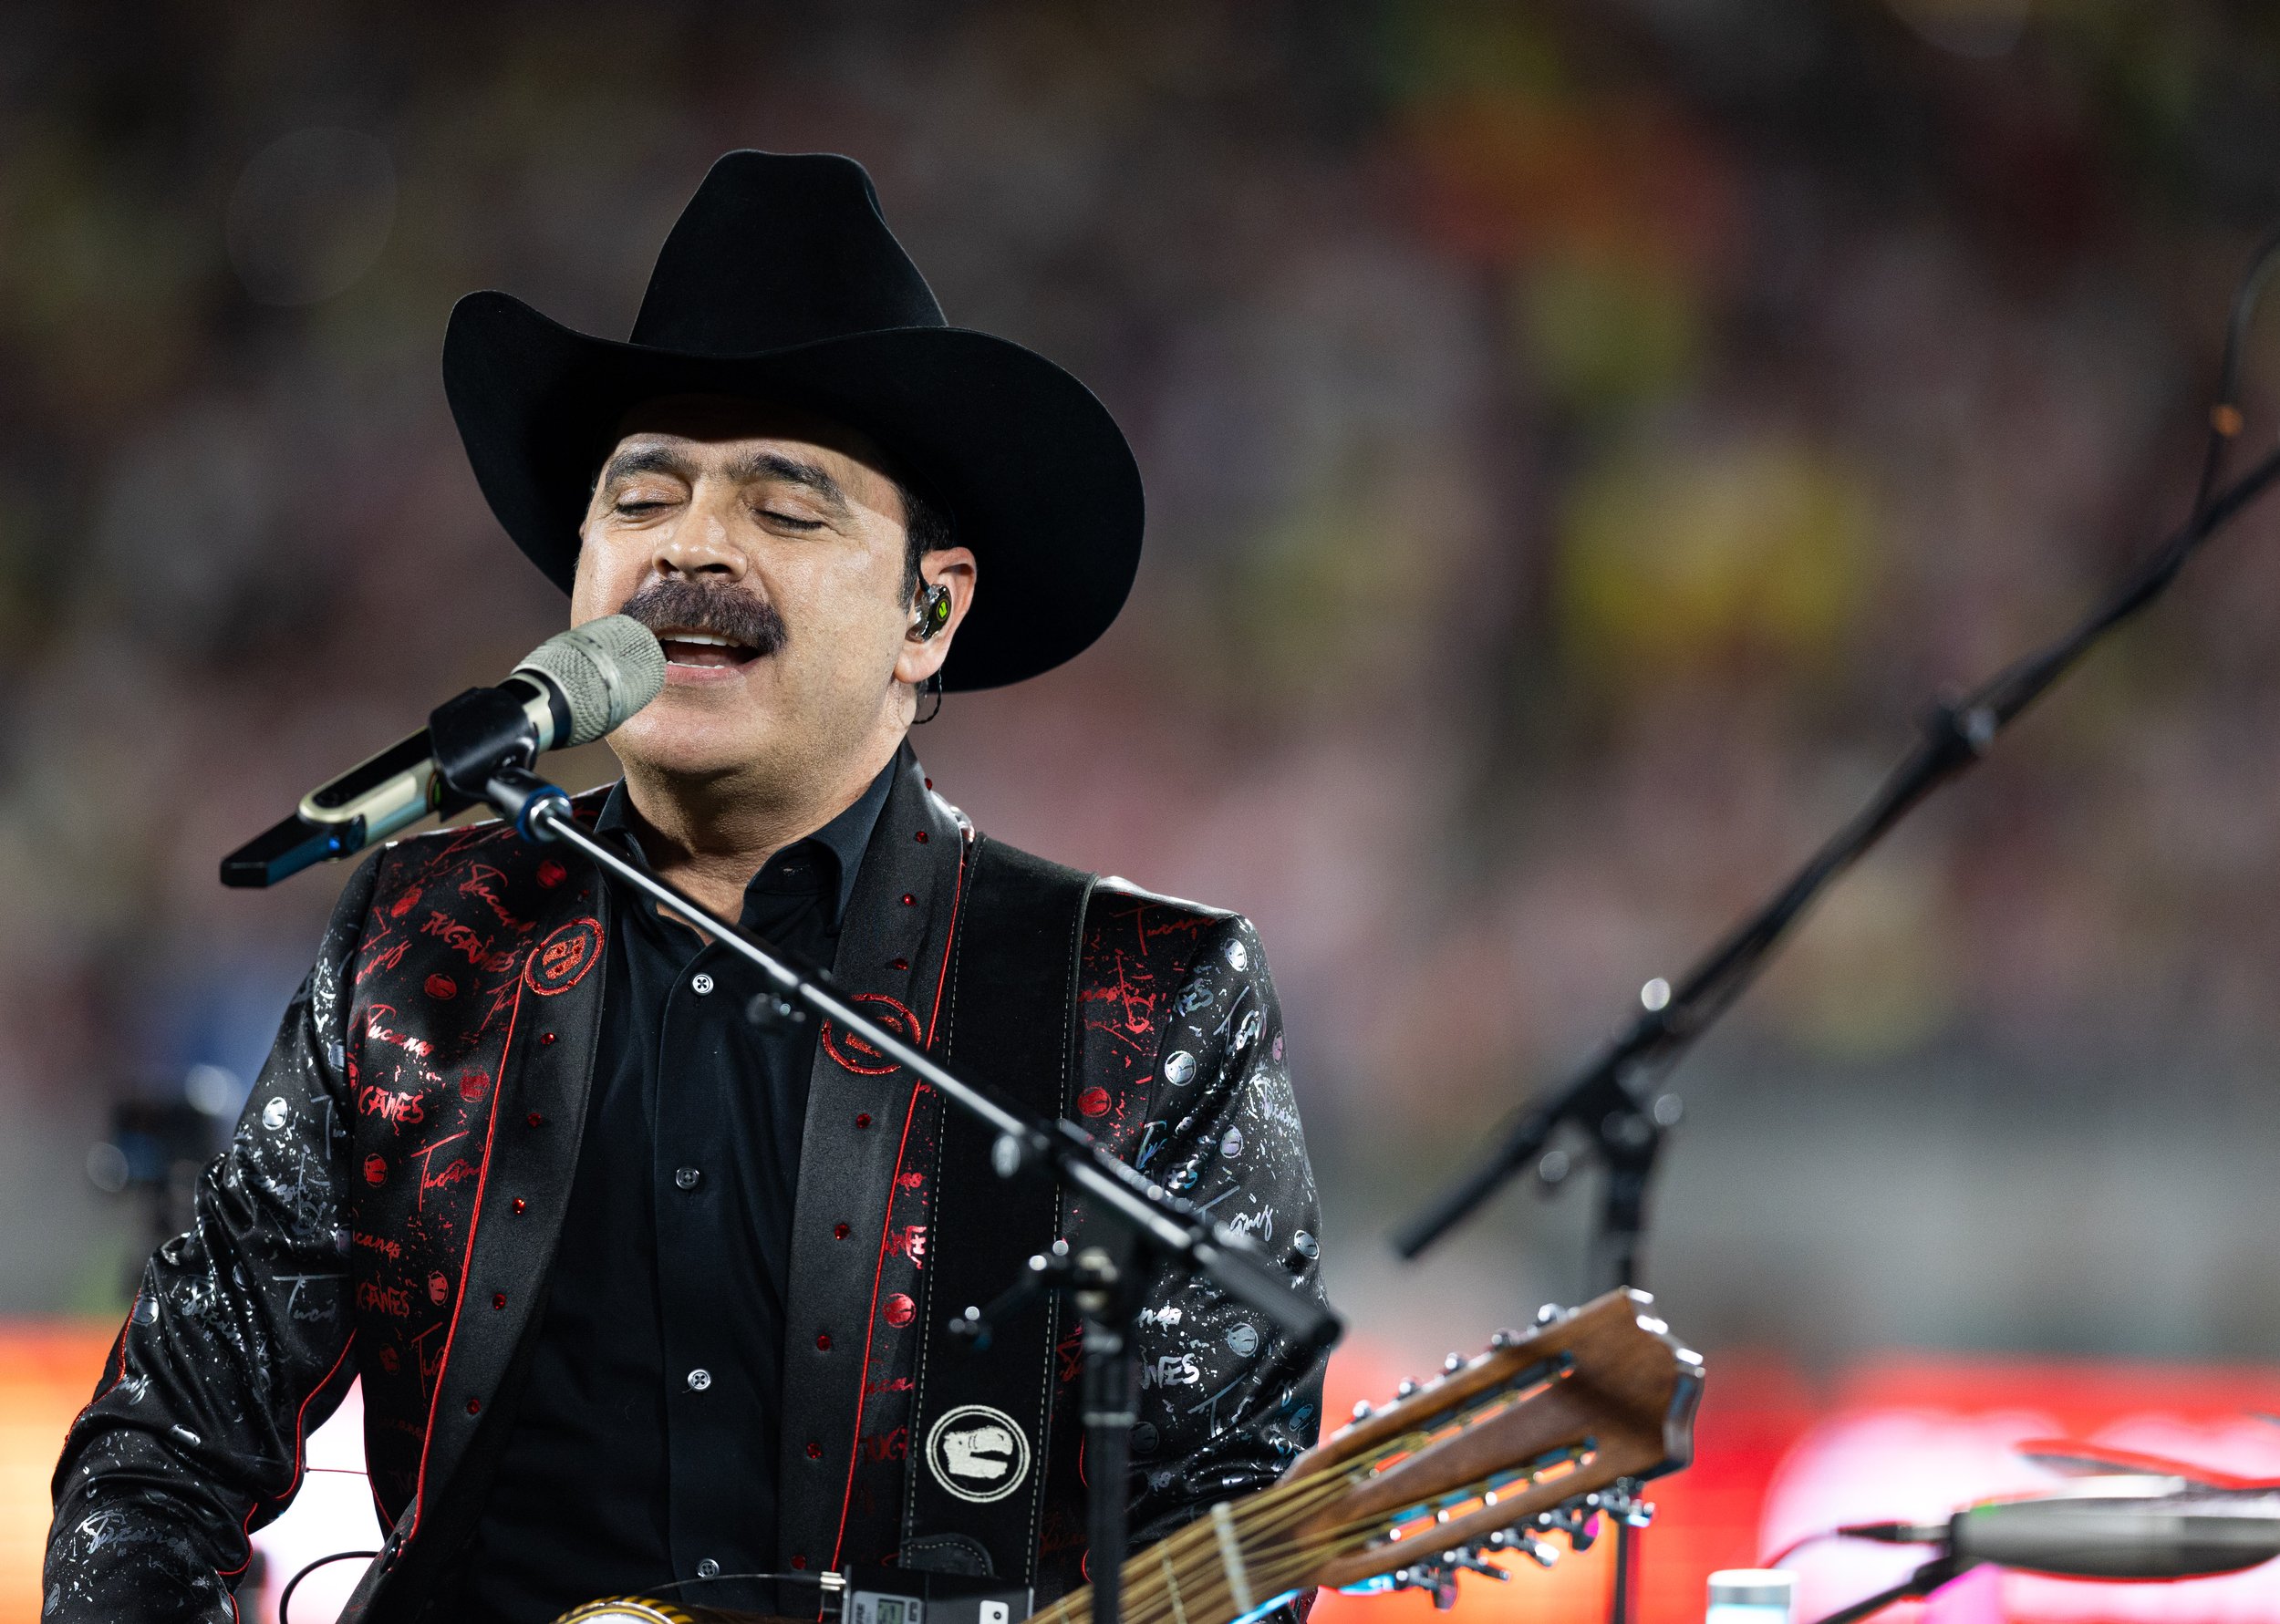  Los Tucanes de Tijuana singer Mario Quintero Lara performing during halftime of El Clasico de Mexico at the Rose Bowl in Pasadena, Calif. on Sunday, Oct. 15. (Danilo Perez | The Corsair) 